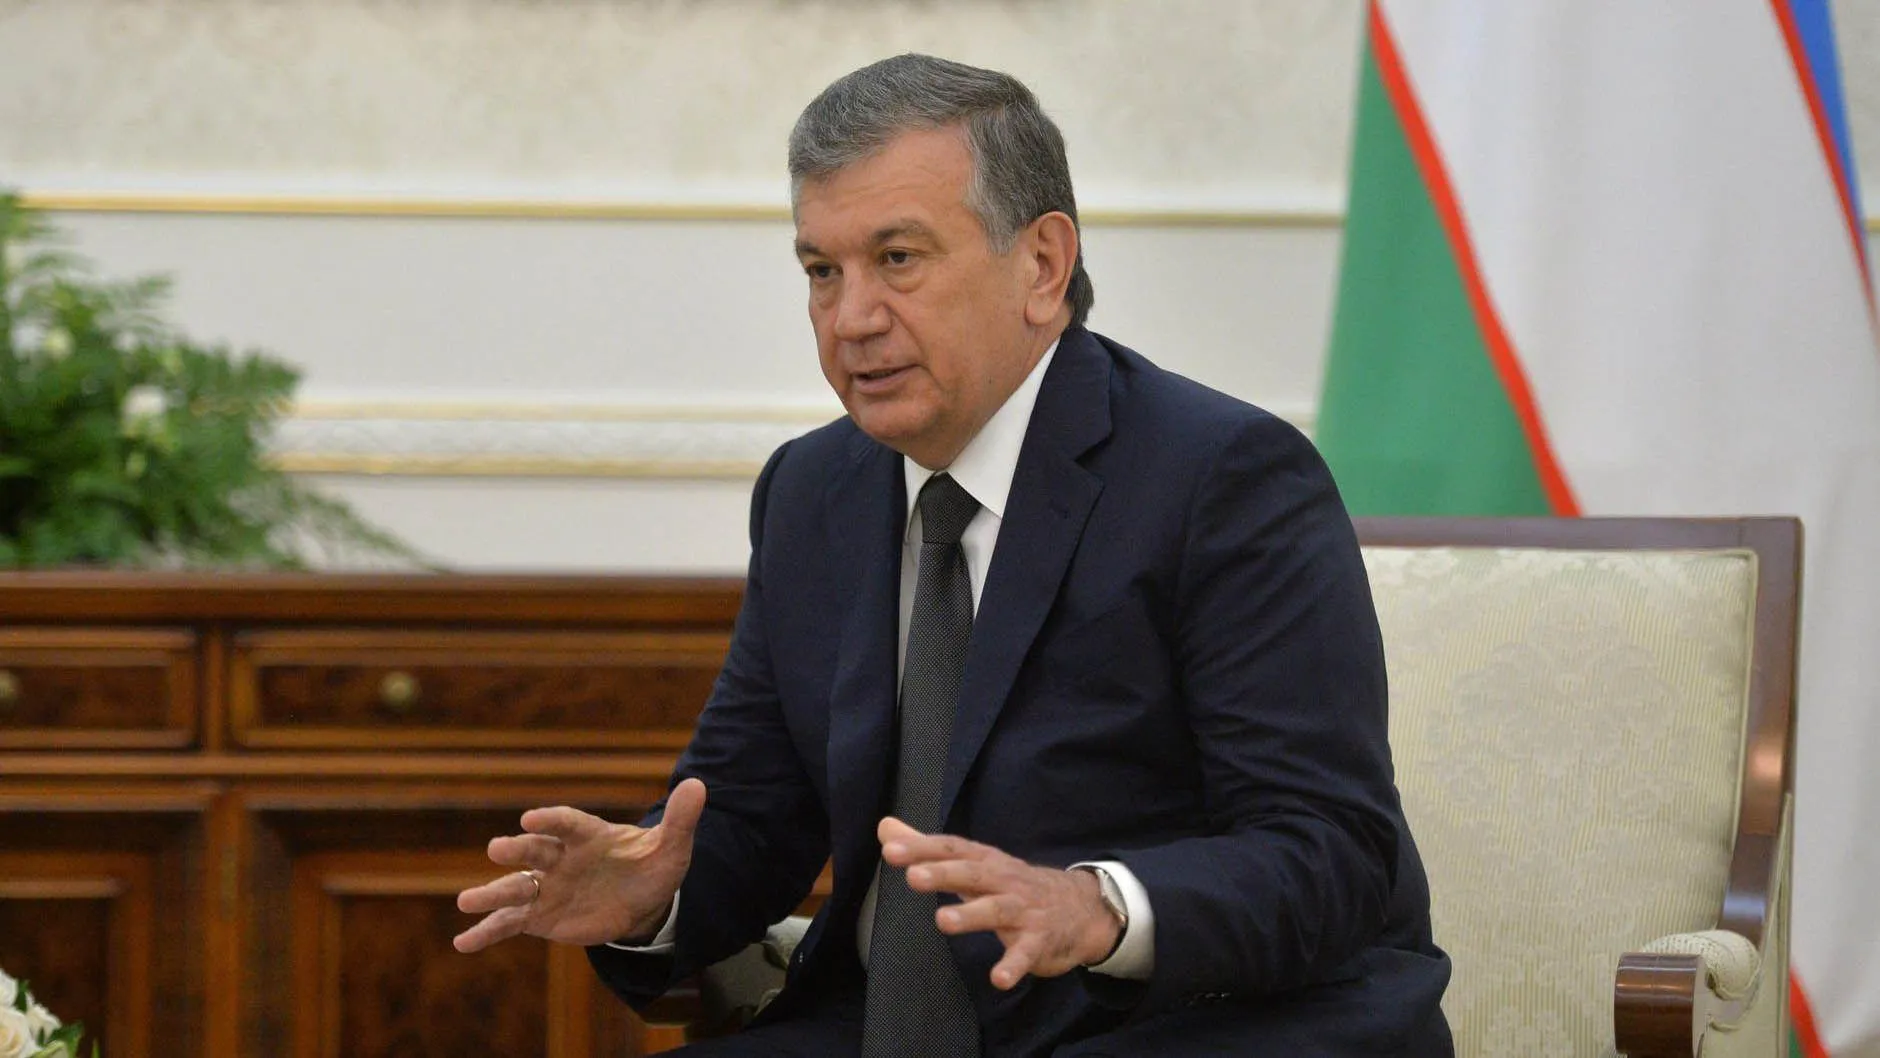 Узбекистан на пороге перемен. Куда поведет страну новый президент